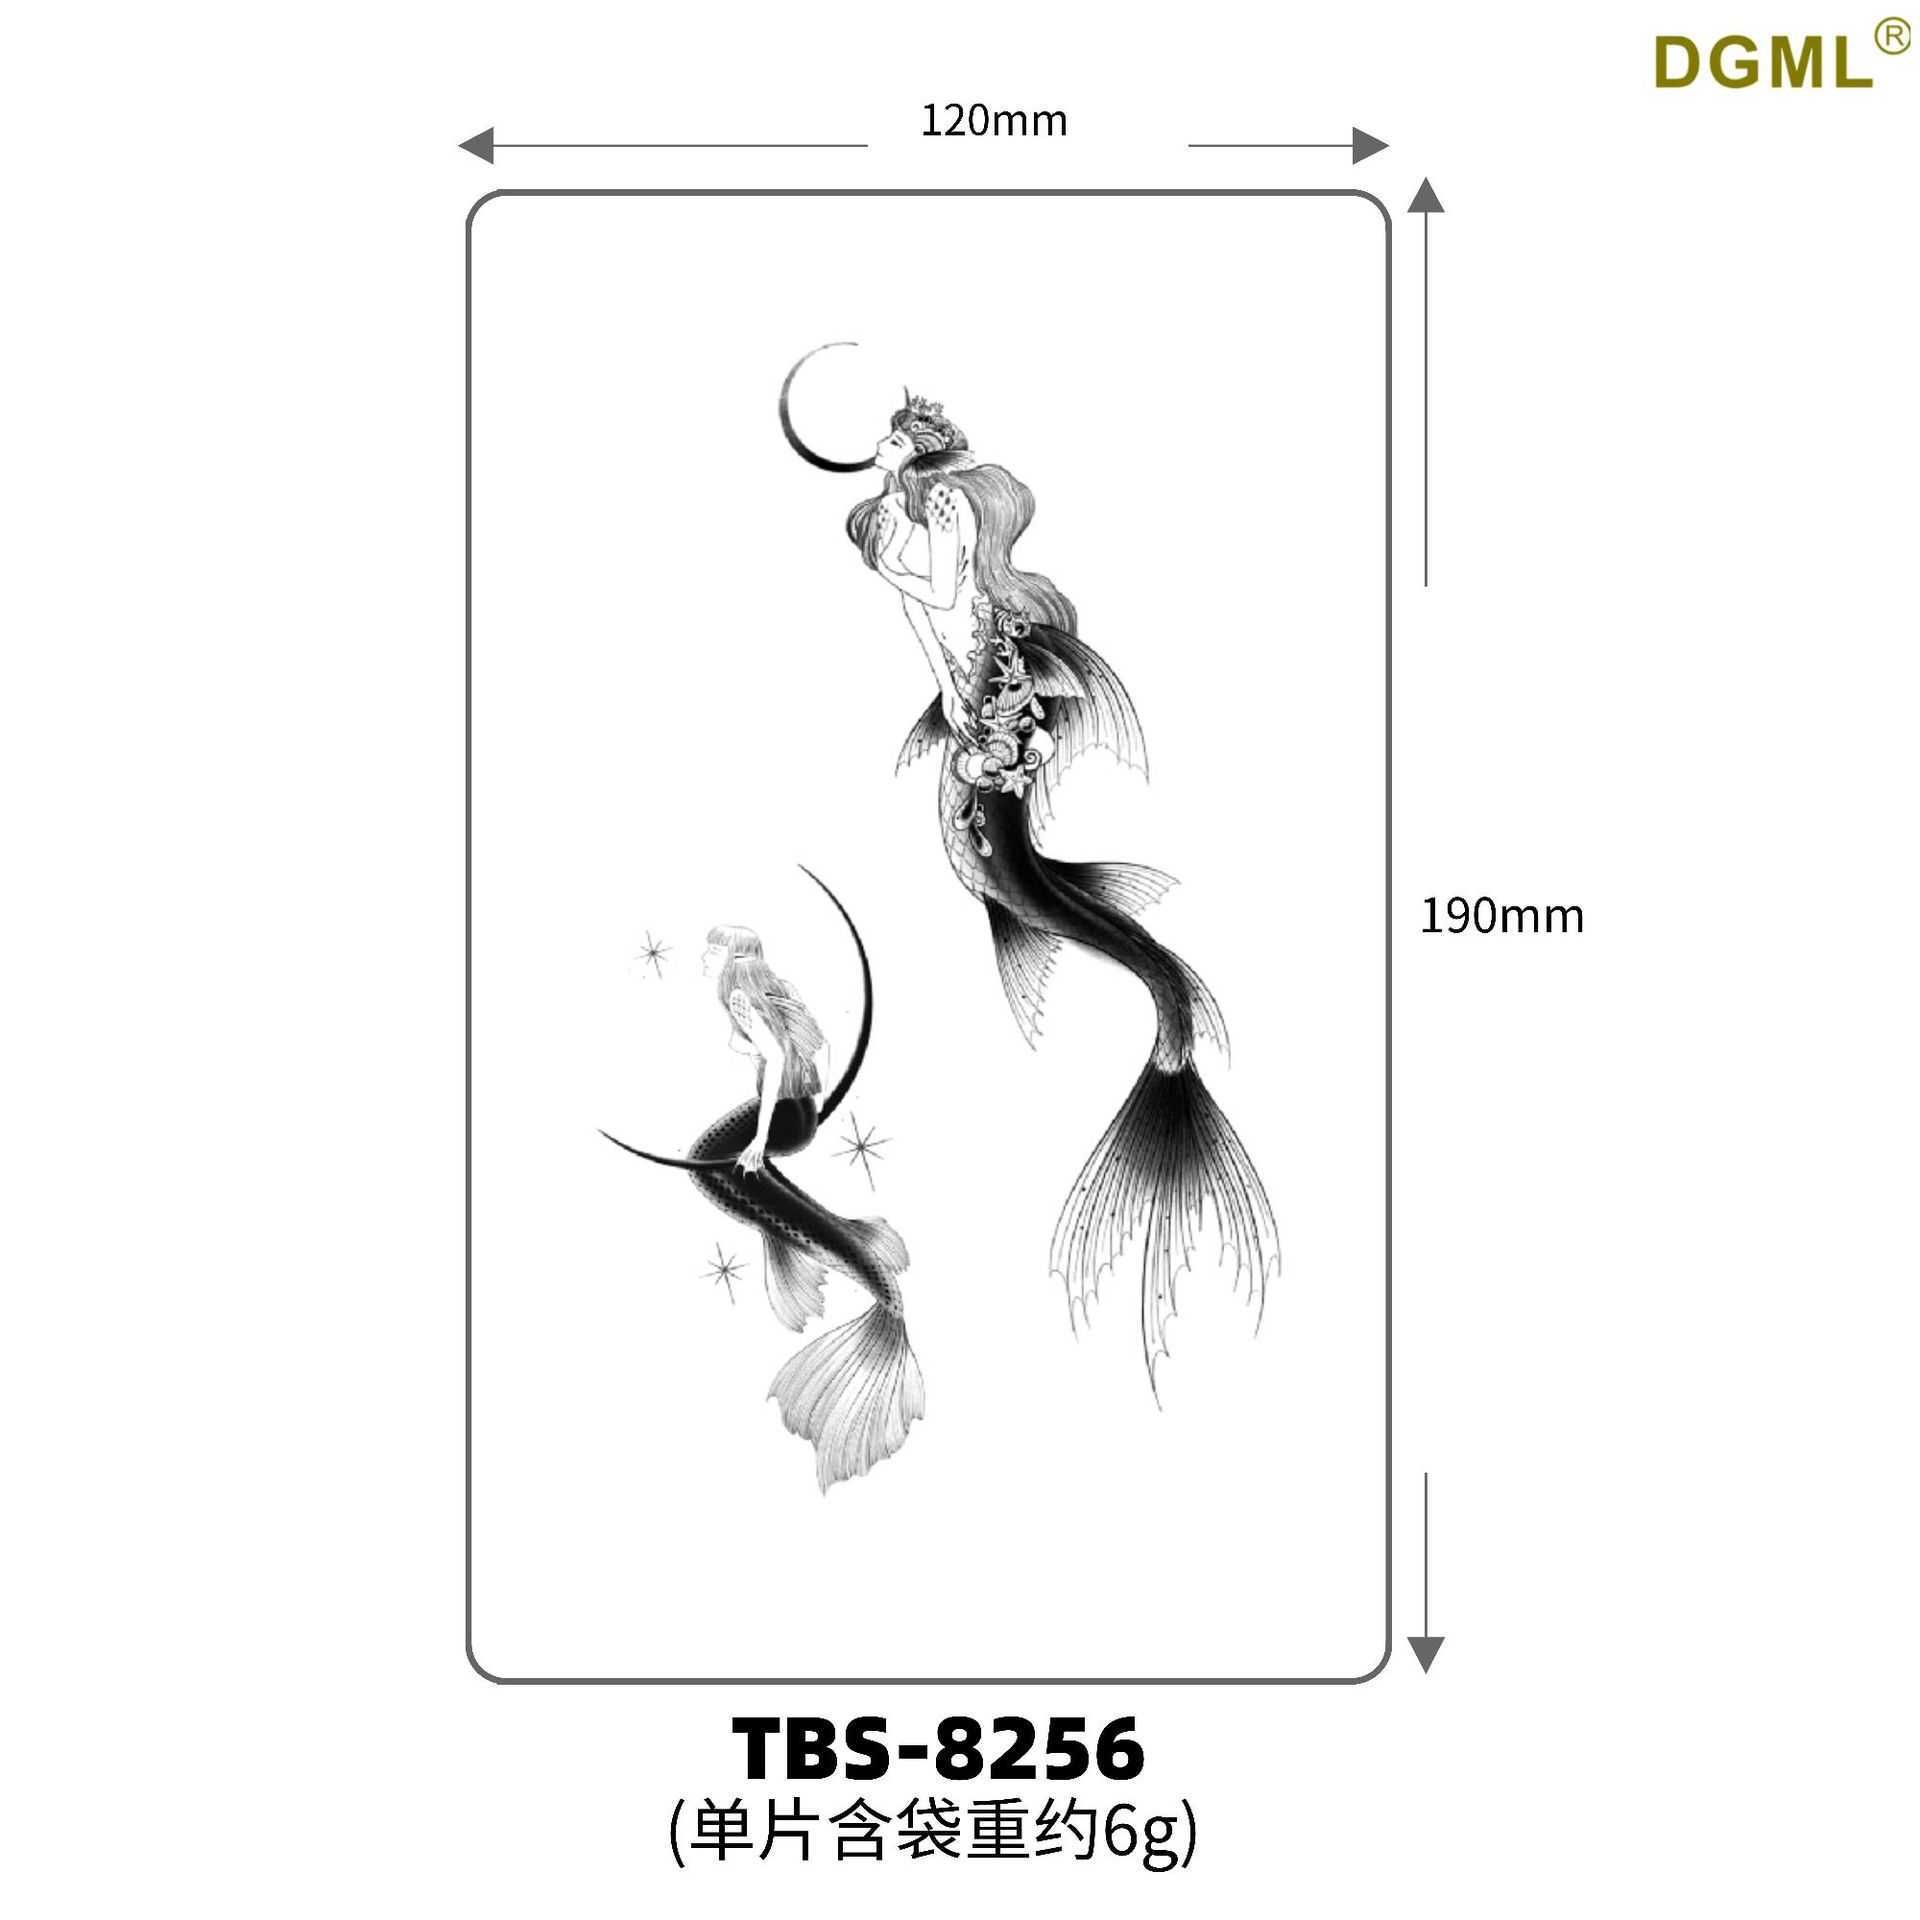 Tbs-8256-19x21cm